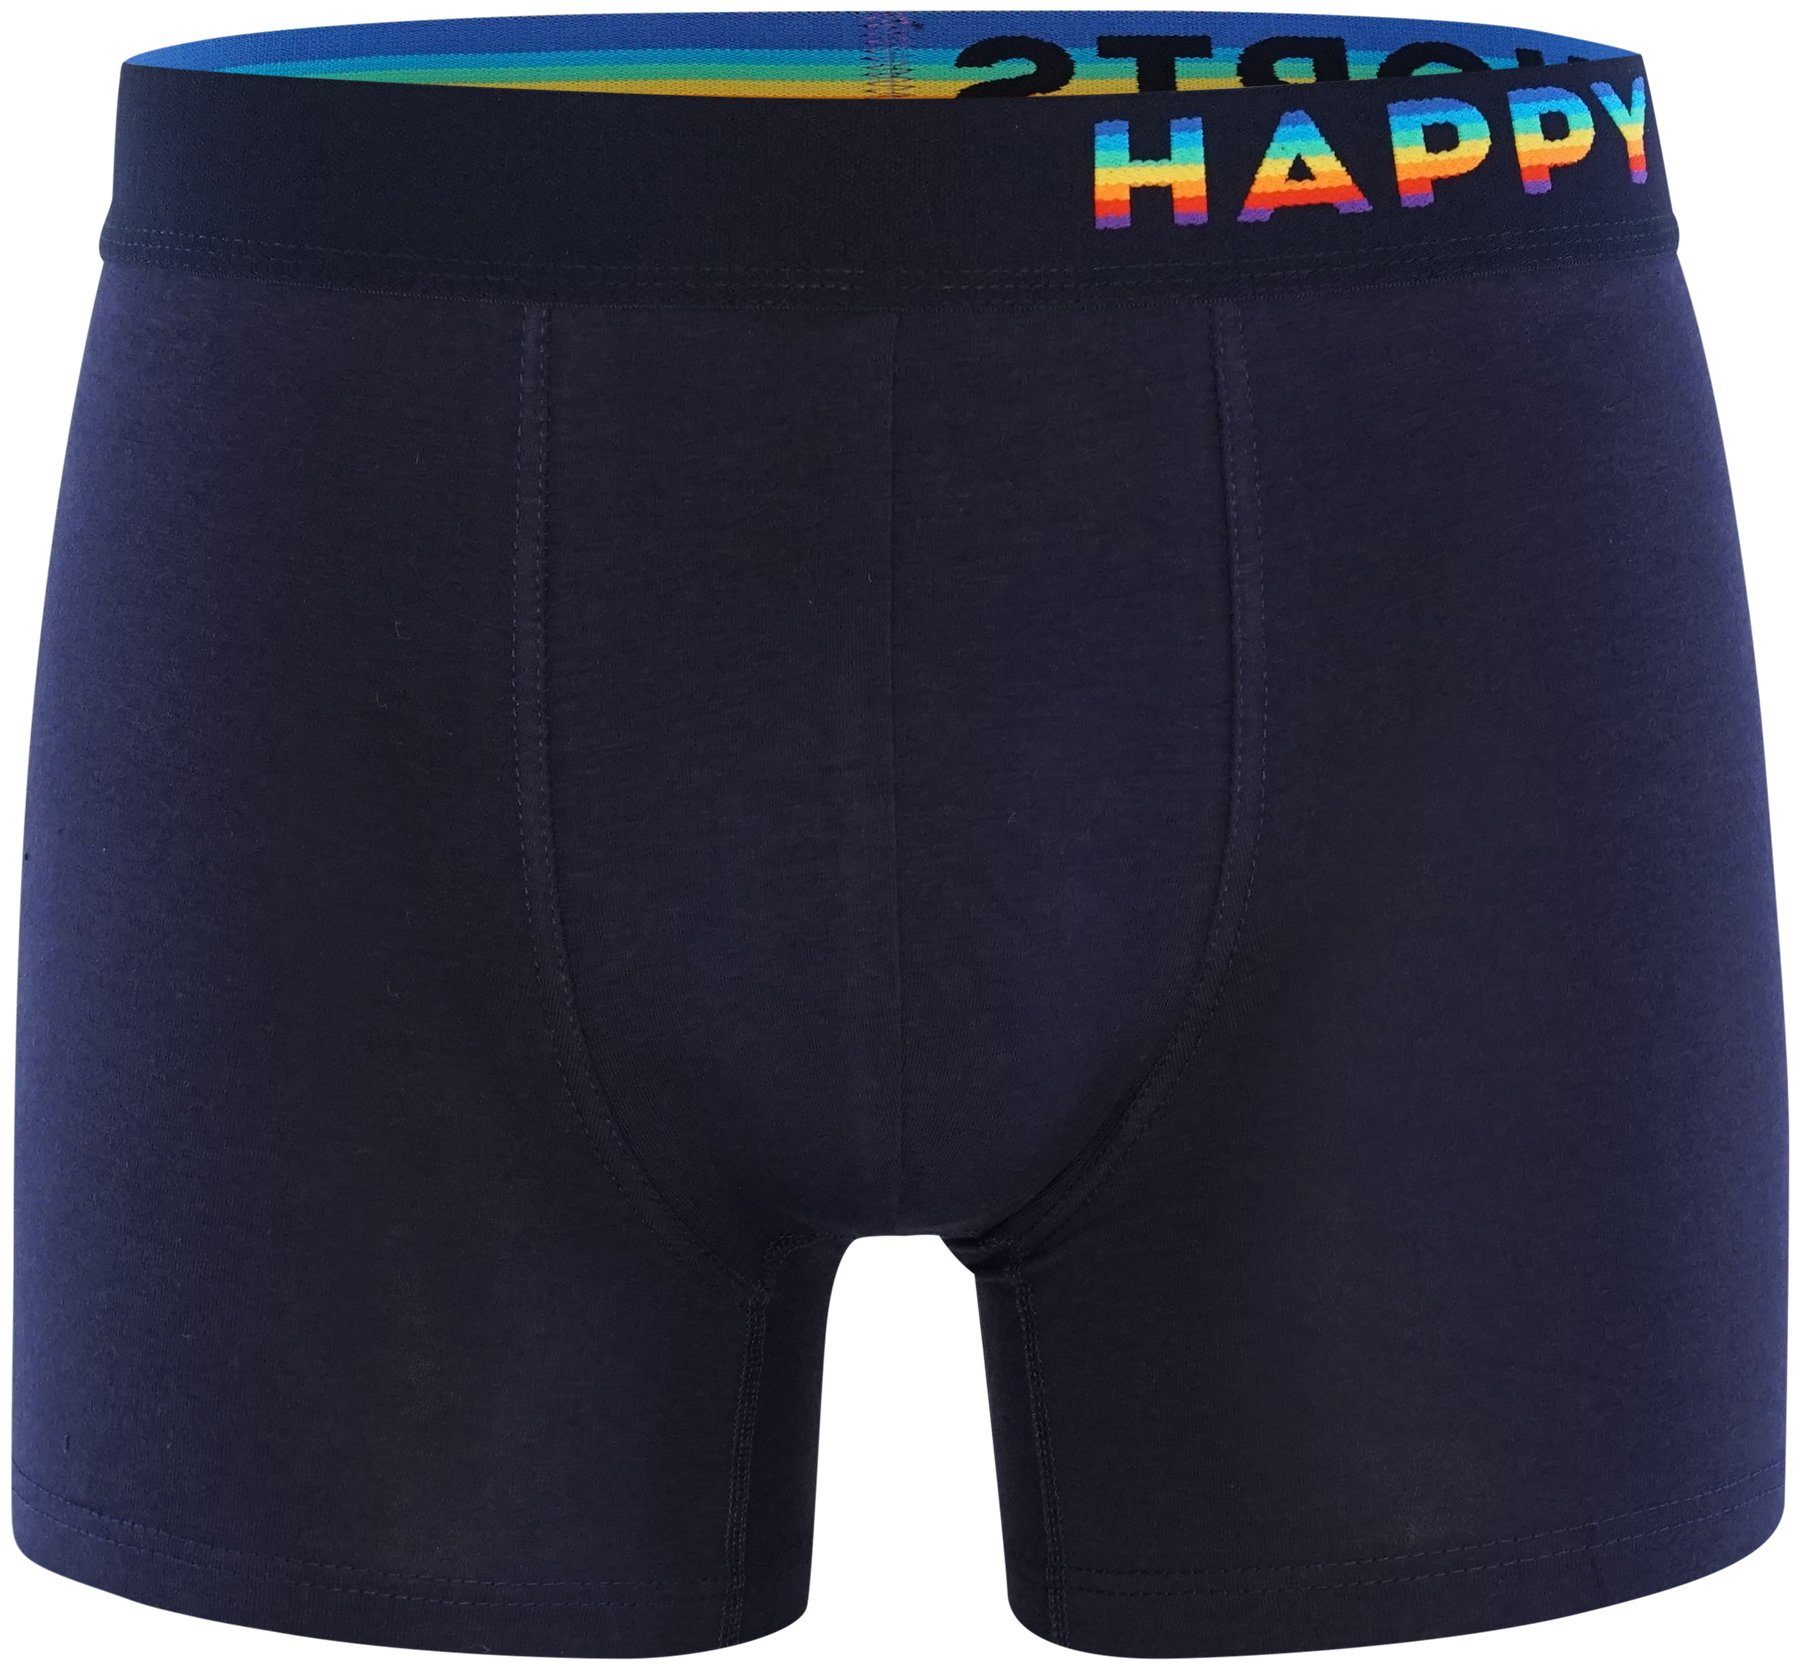 2-Pack Rainbow HAPPY Pants SHORTS Hearts Trunks Retro